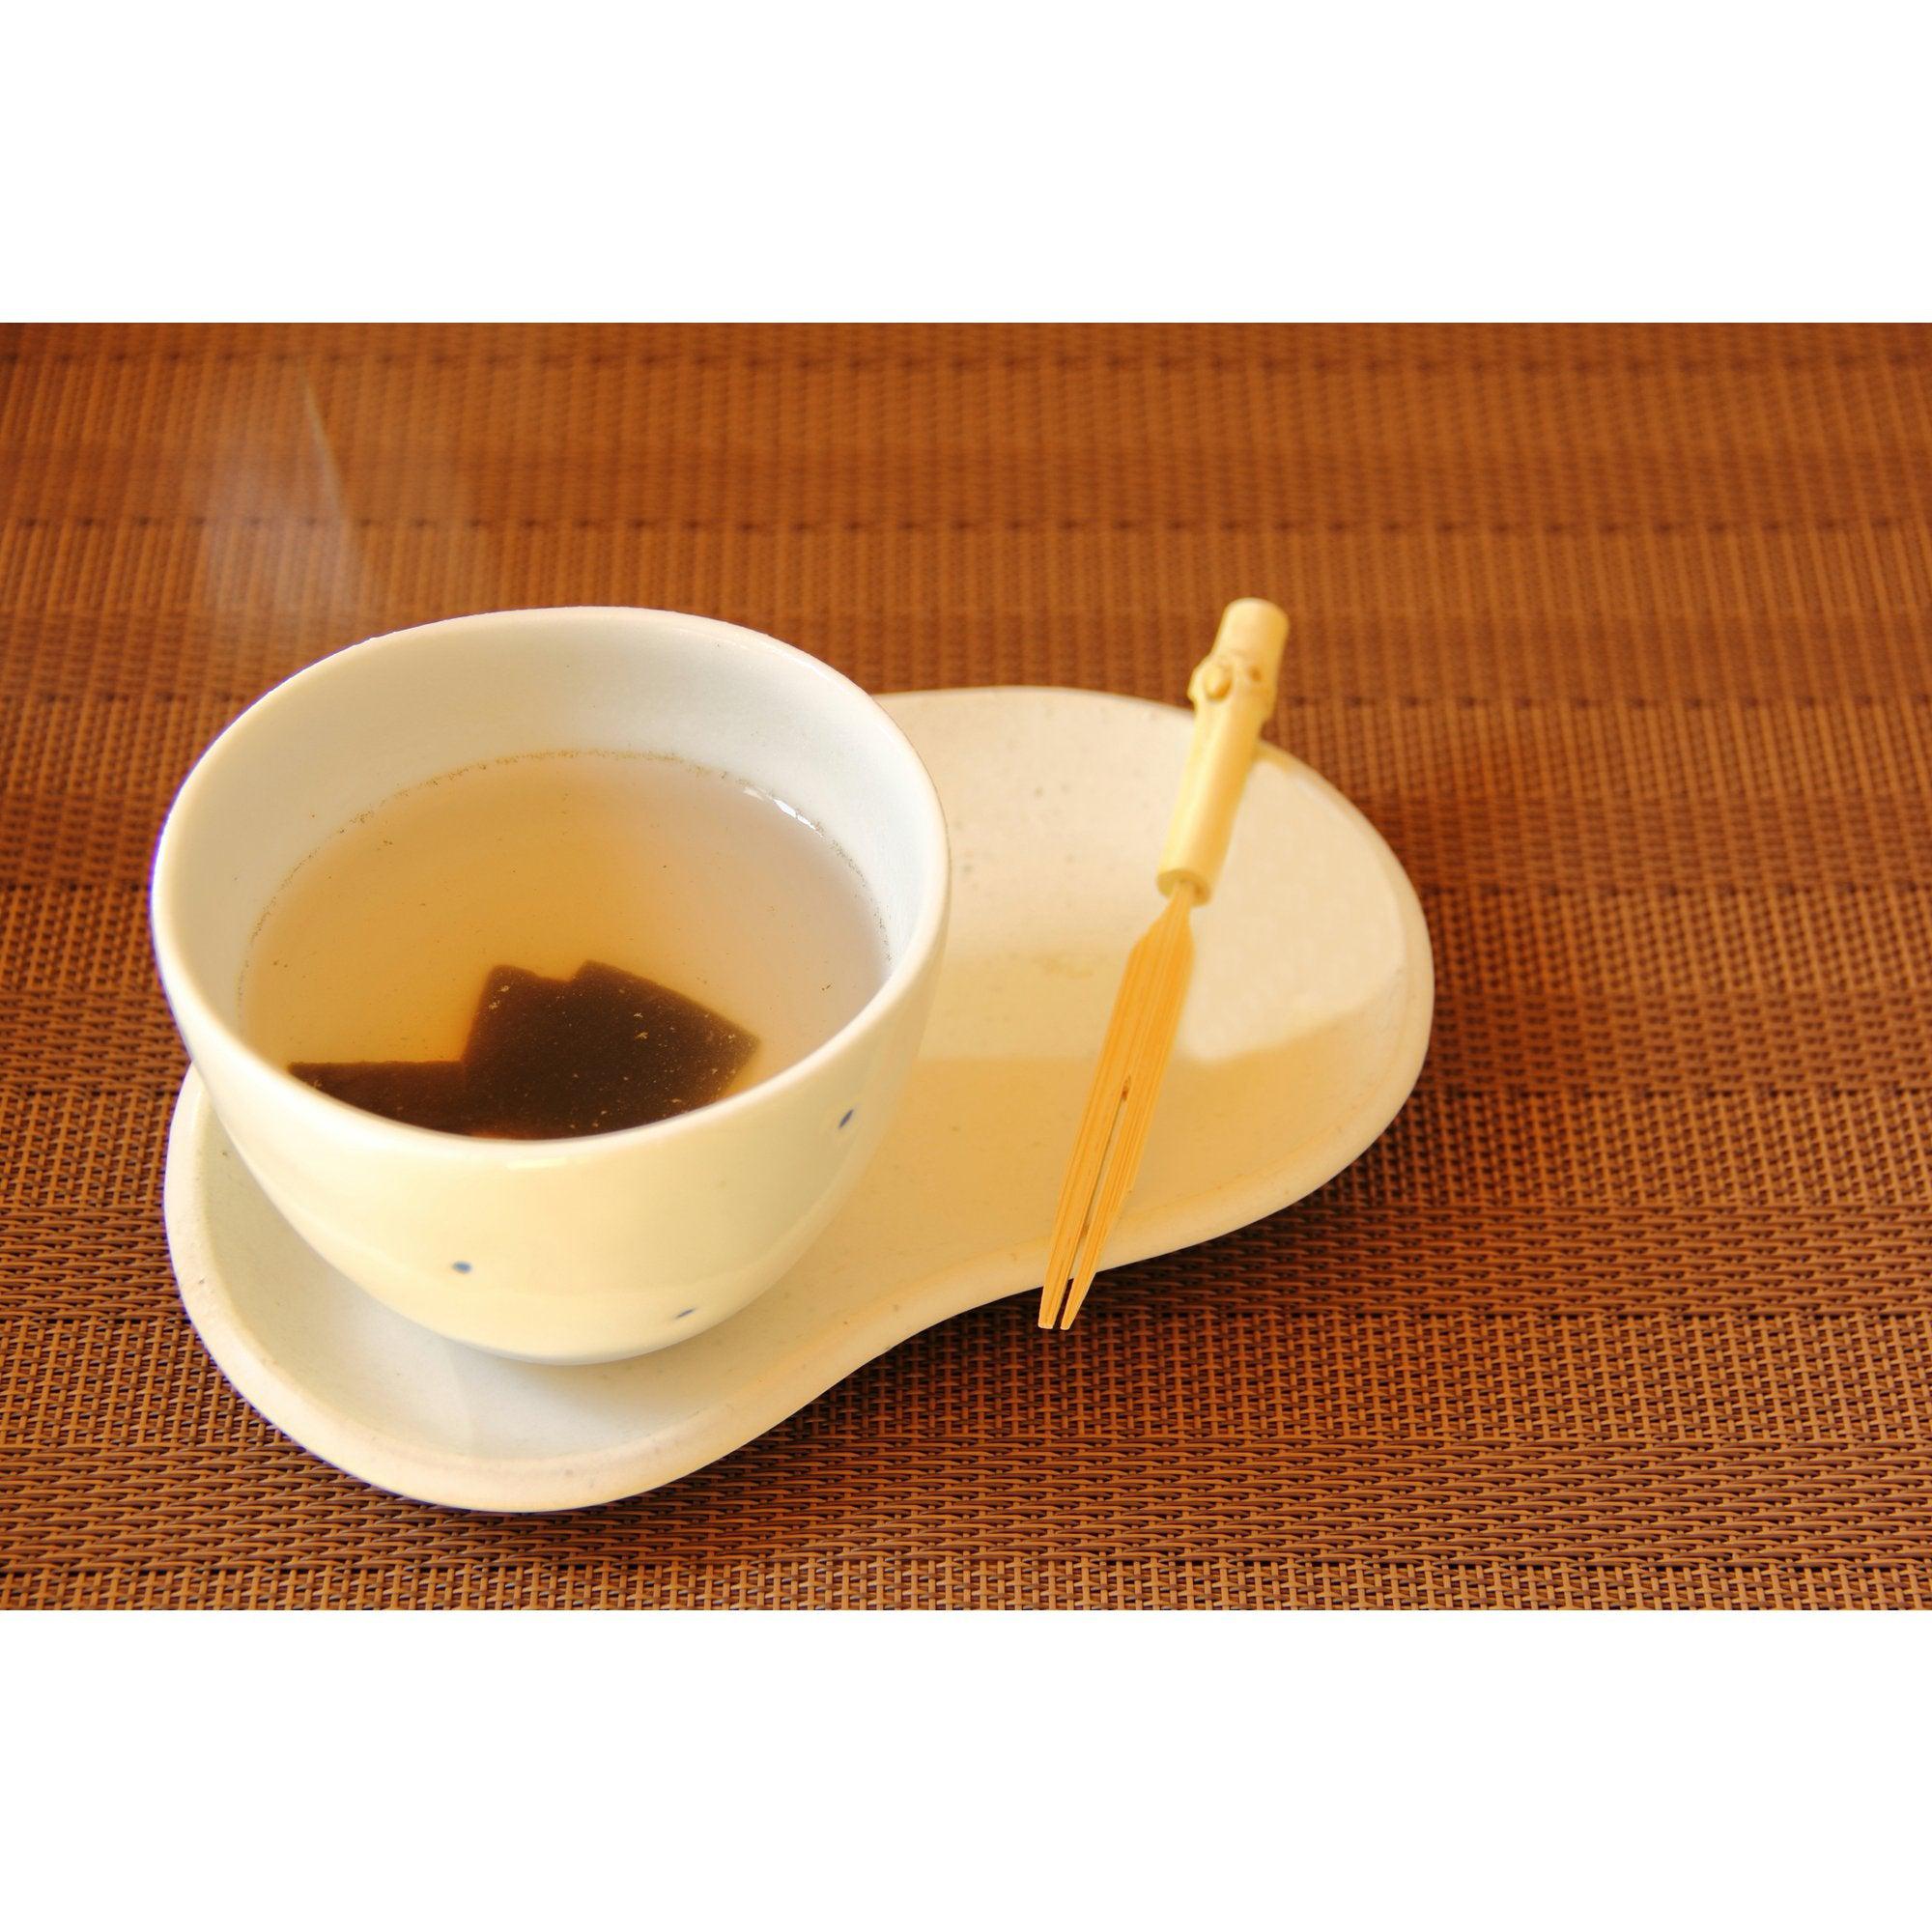 Izuri Konbucha Natural Japanese Kelp Tea Powder 40g